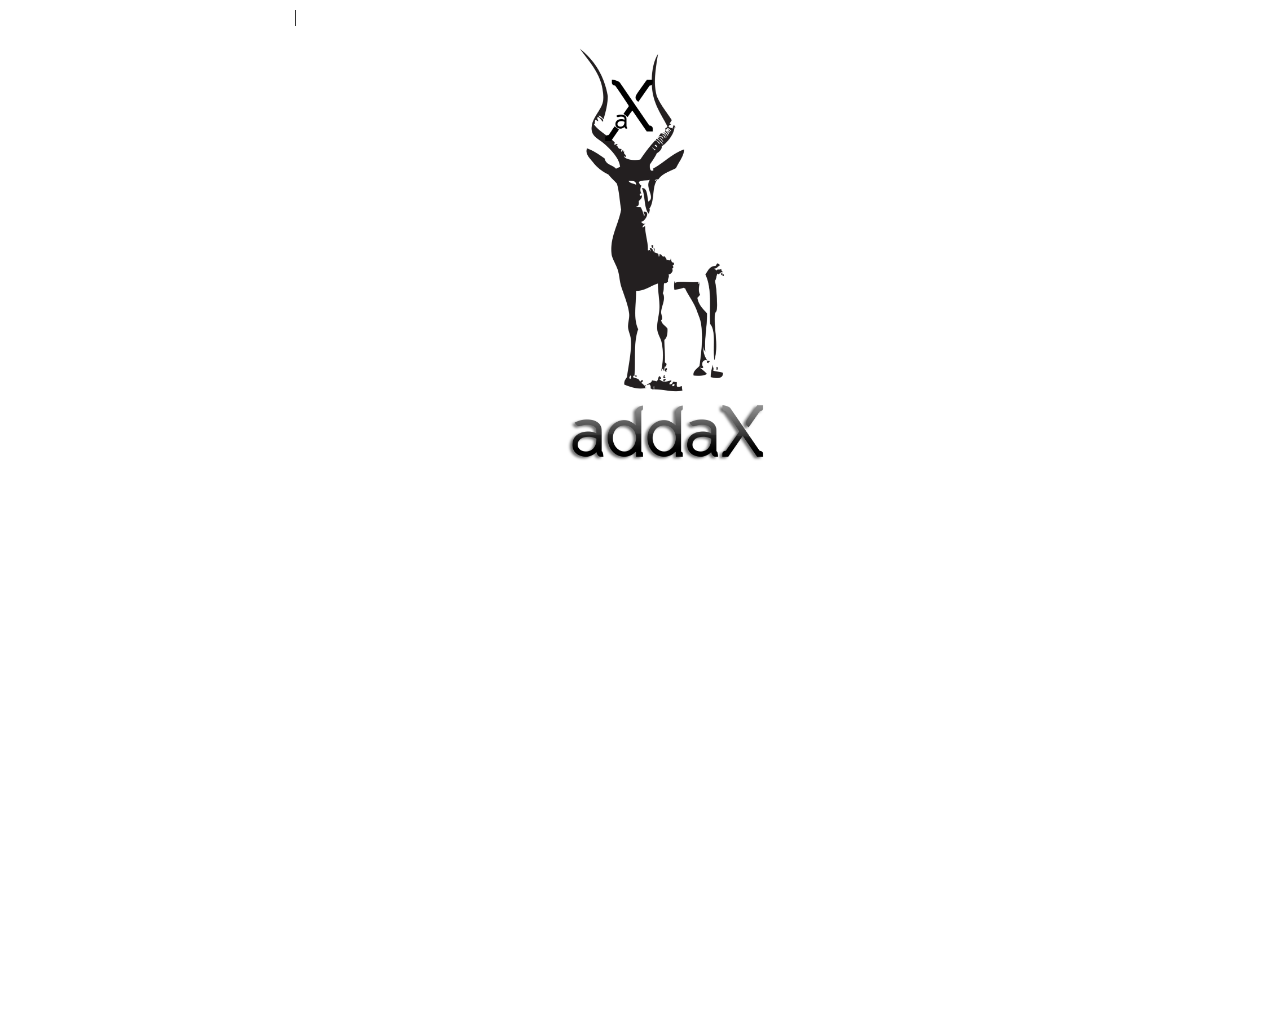 addax.dk